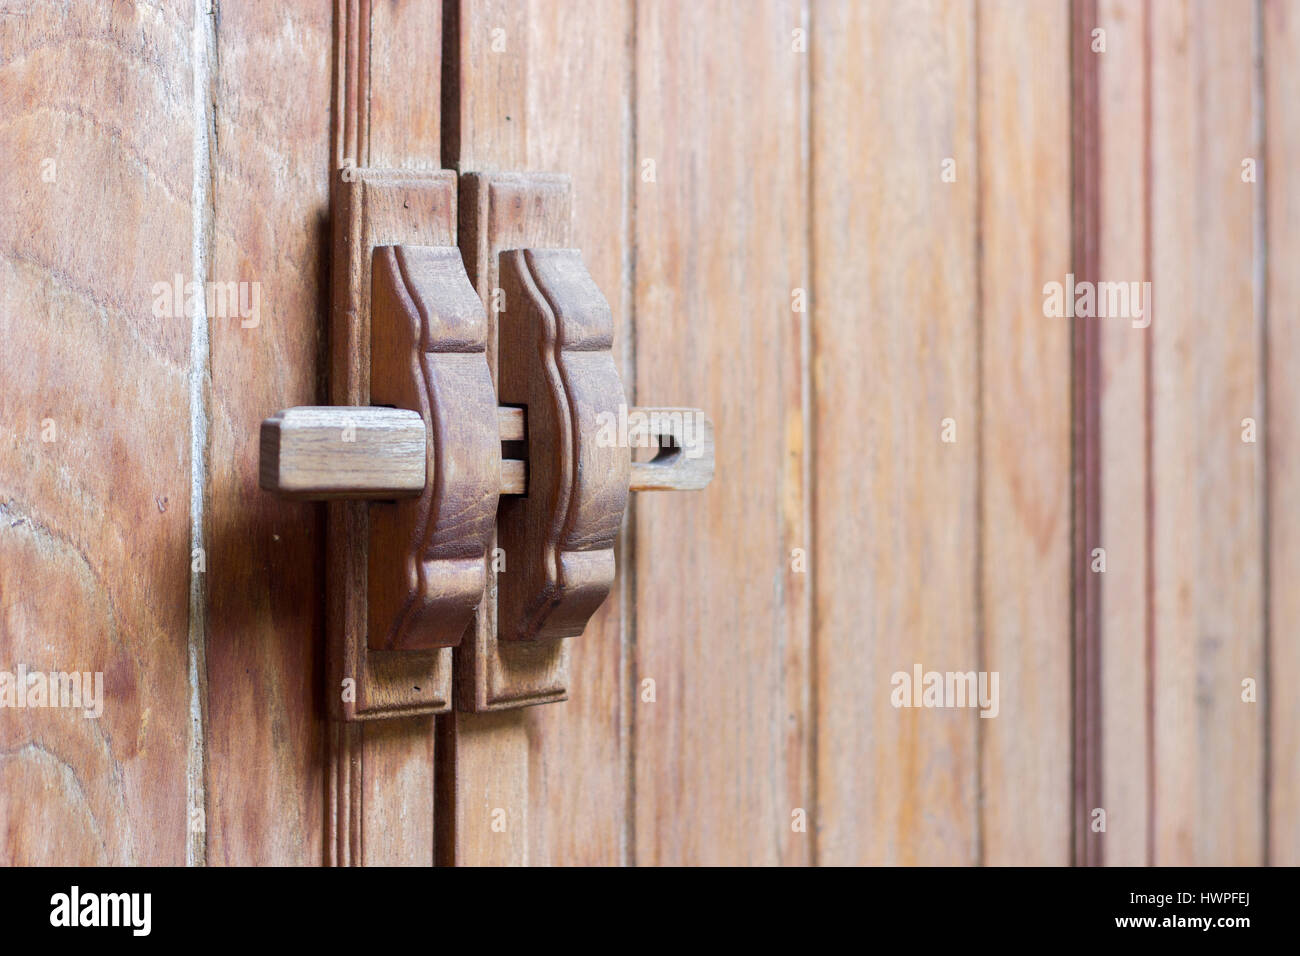 close up wood handle lock on wooden door interior Stock Photo